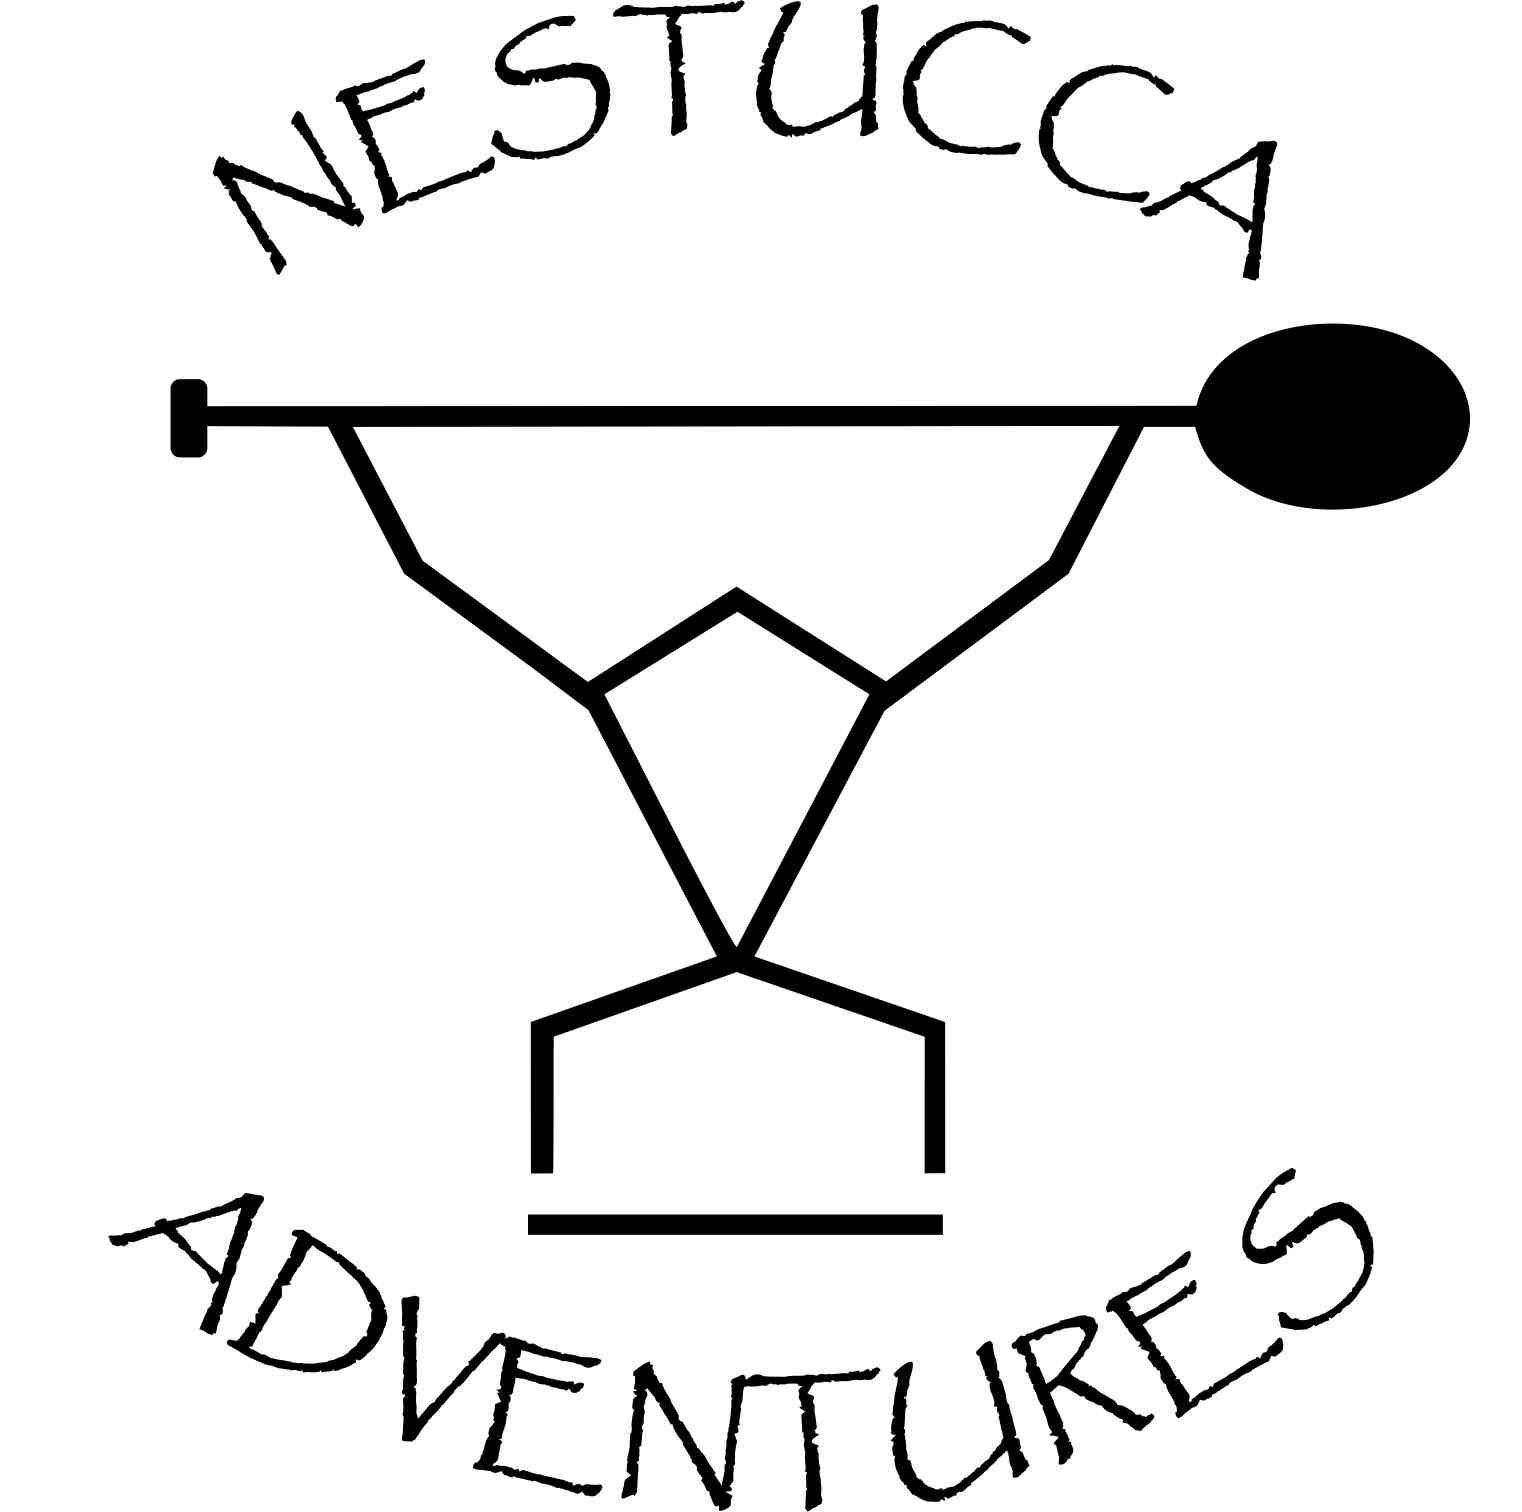 Nestucca Adventures